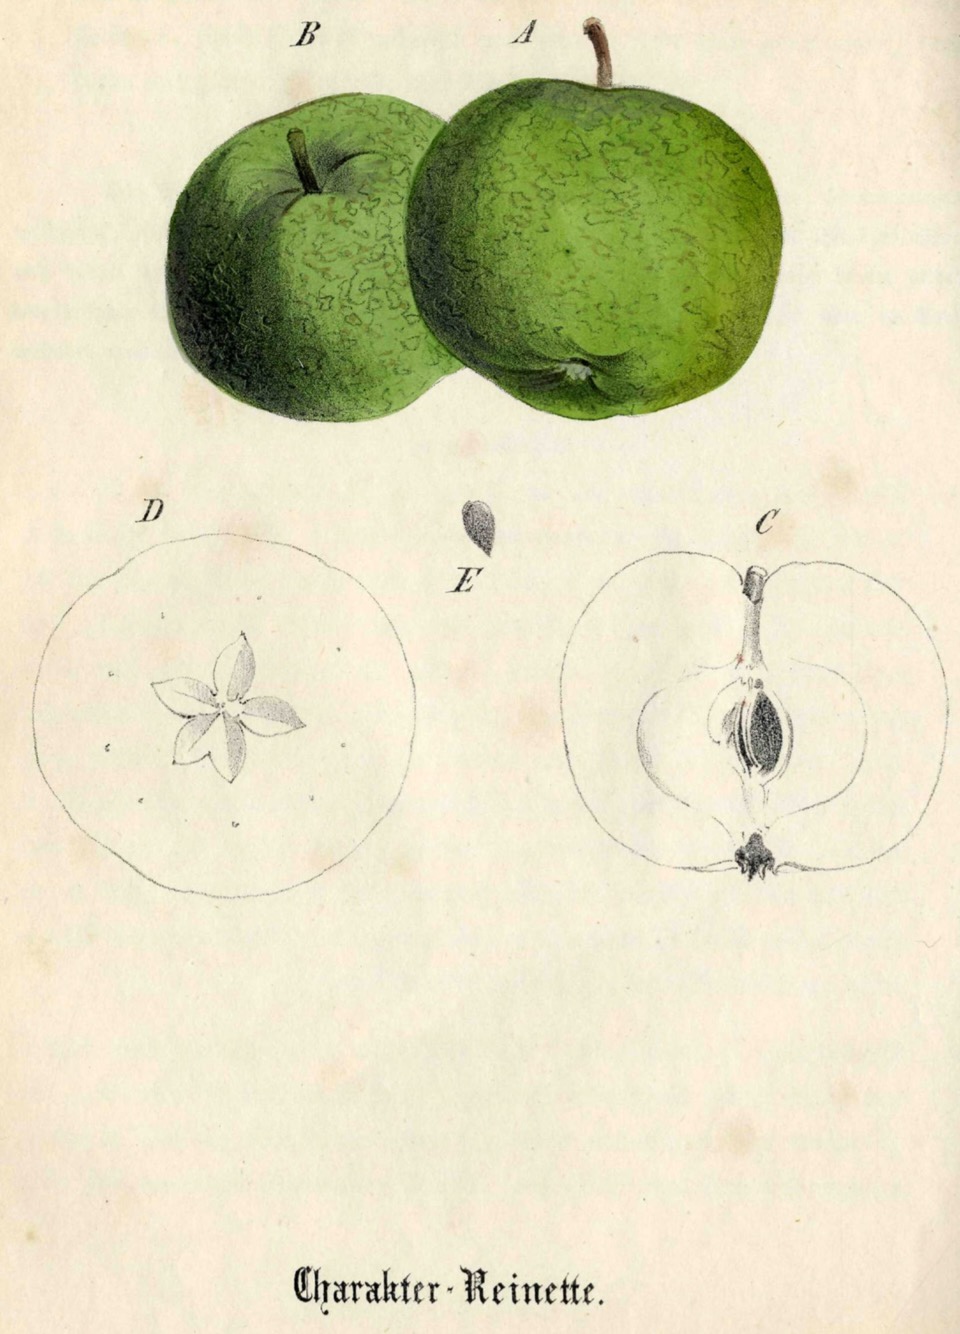 Historische Abbildung zweier grüner Äpfel und eines aufgeschnittenen Apfels und des schematischen Kerngehäuses; BUND Lemgo